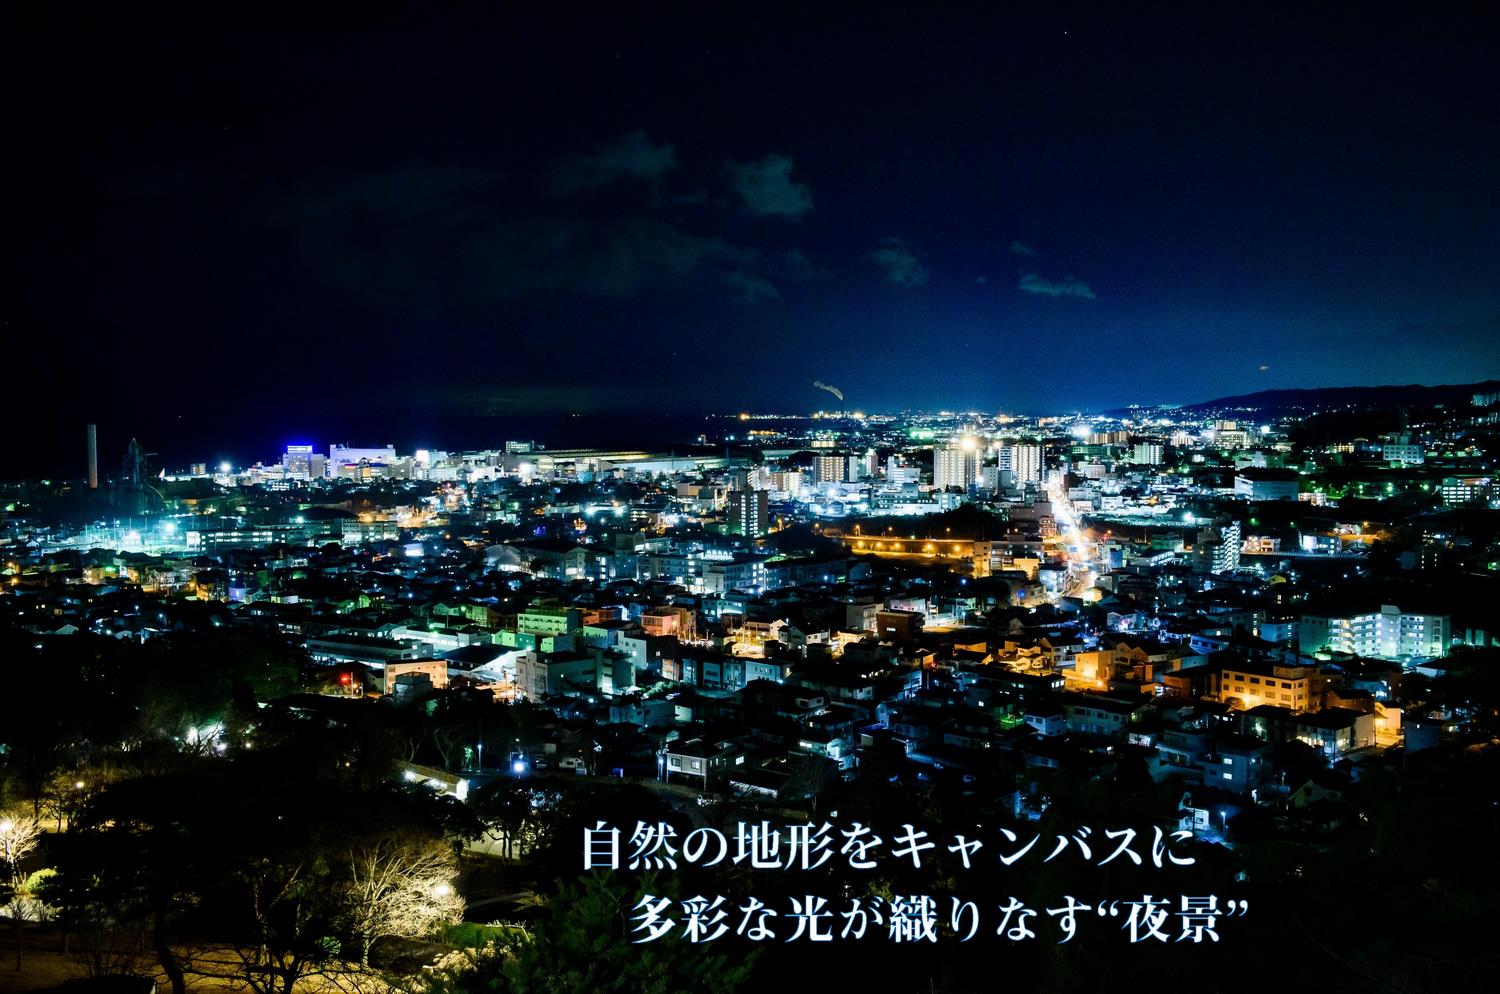 日本夜景遺産に選定された、“かみね公園からの夜景”